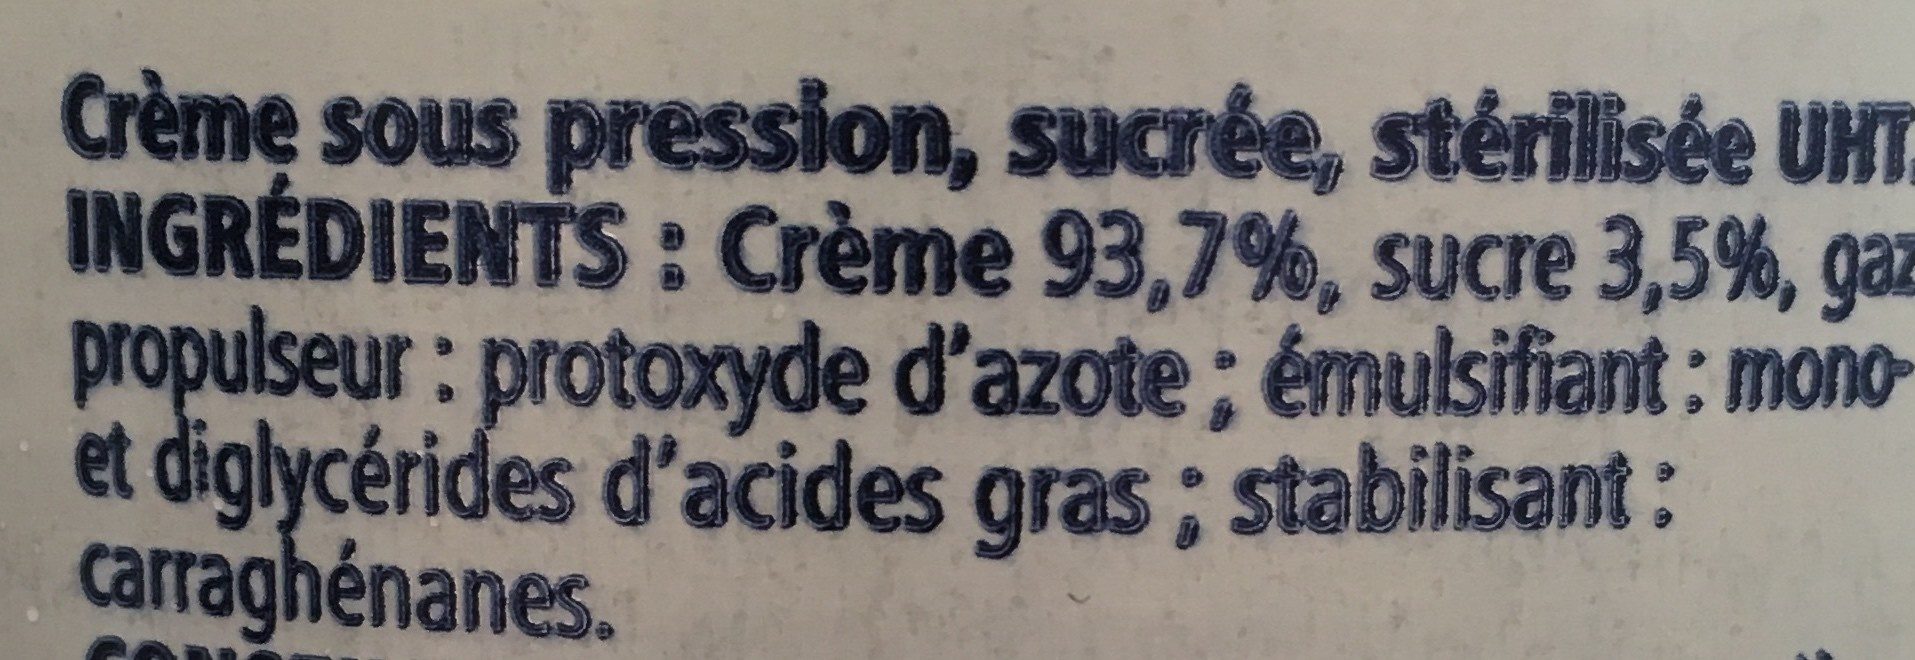 Crème sous pression sucrée - Ingredients - fr